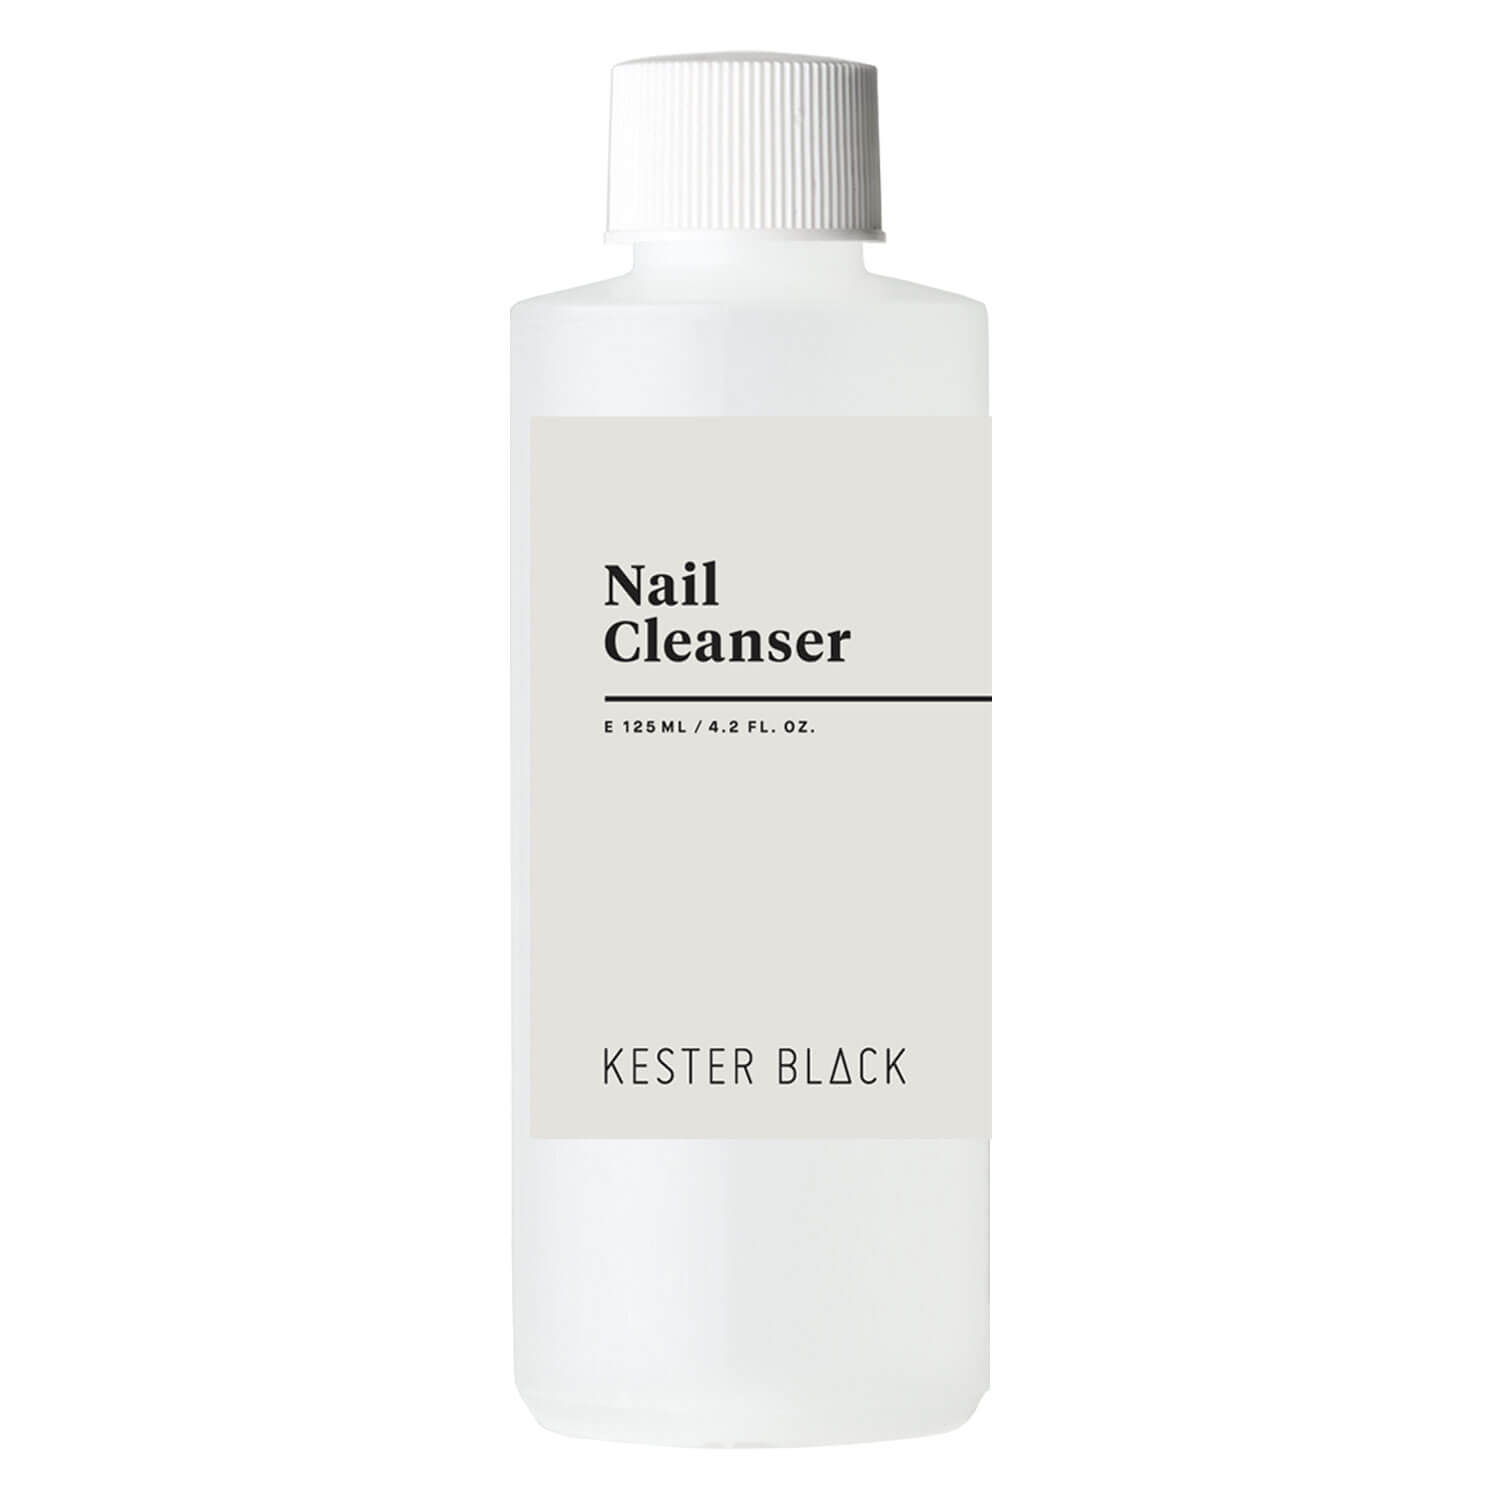 Produktbild von KB Nail Care - Nail Cleanser